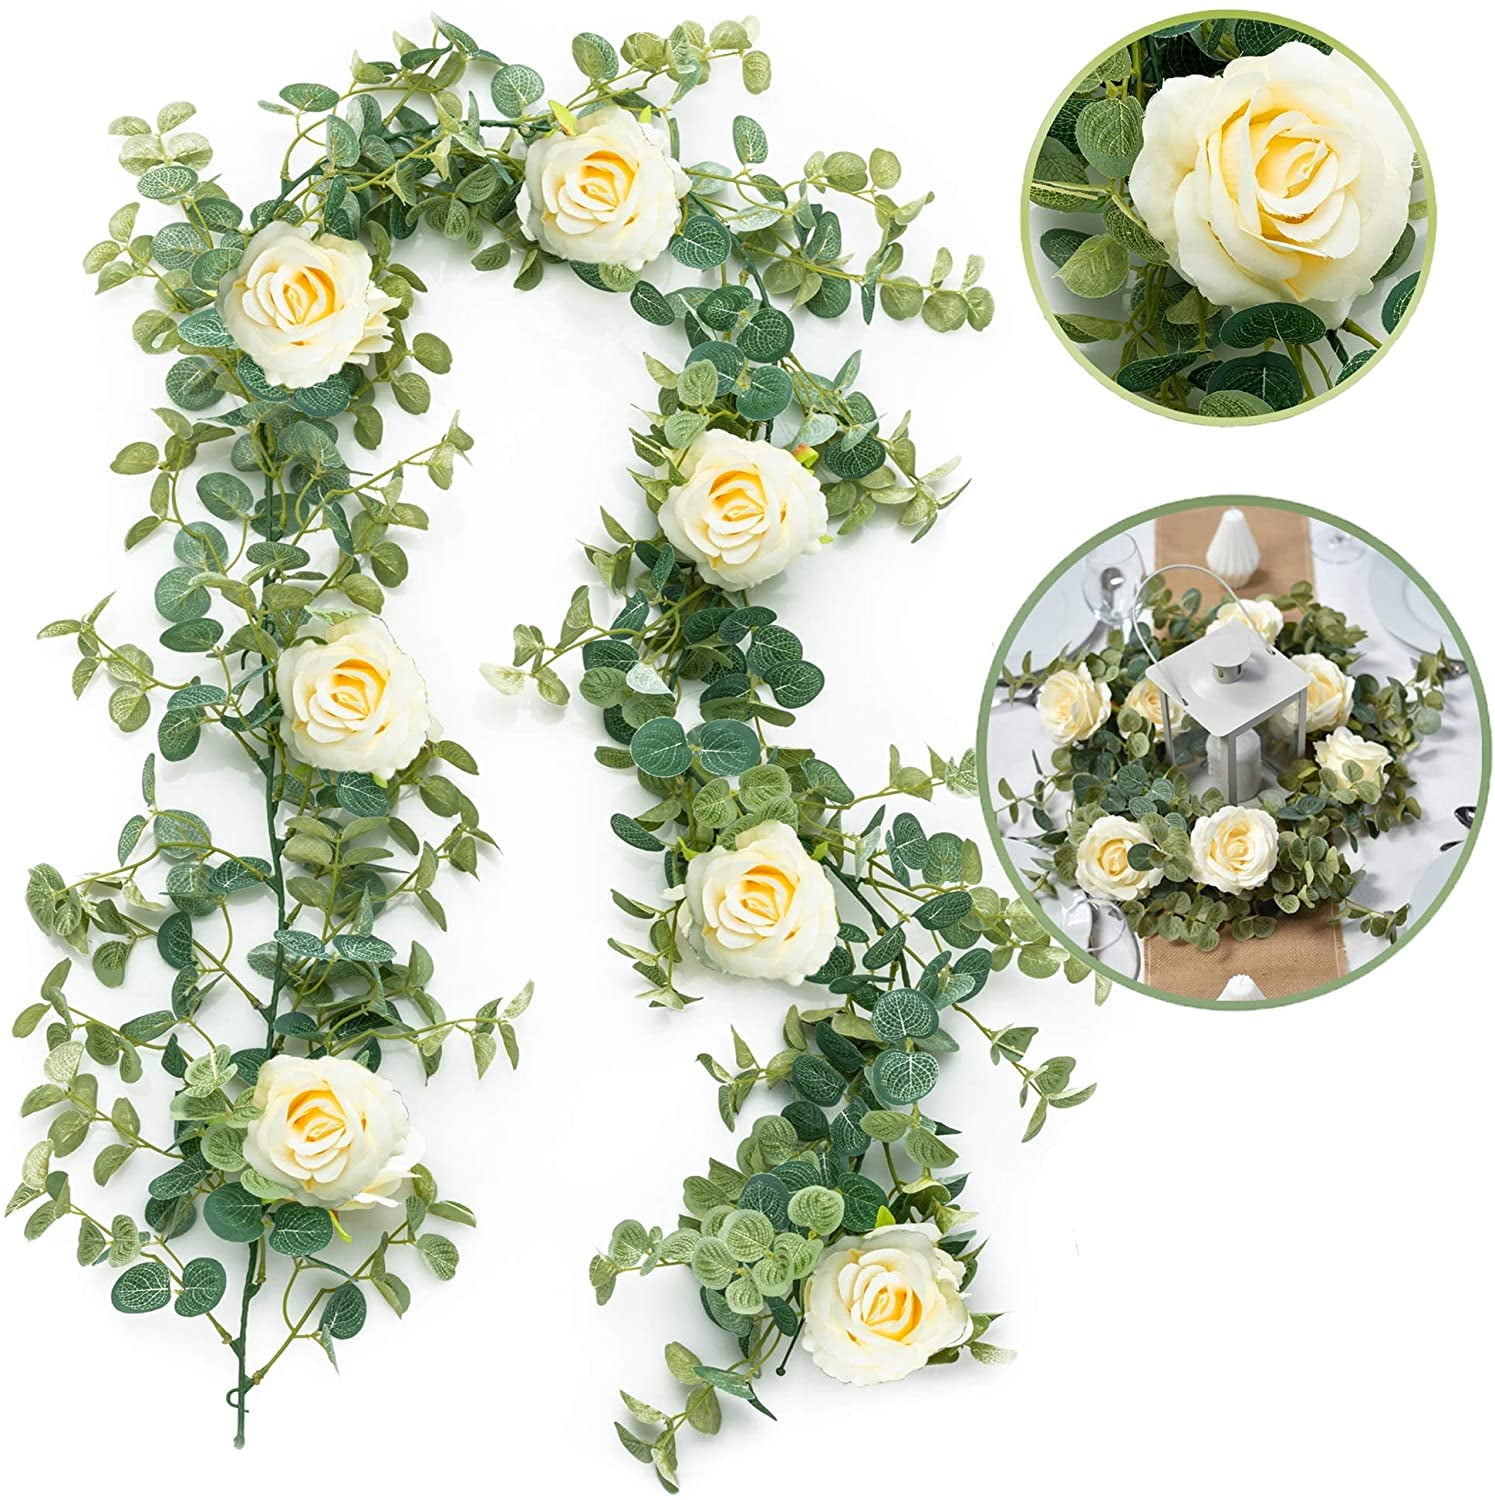 Antique White /Cream Eternity Rose Silk Flower Garland Wreath Wedding Home Event 